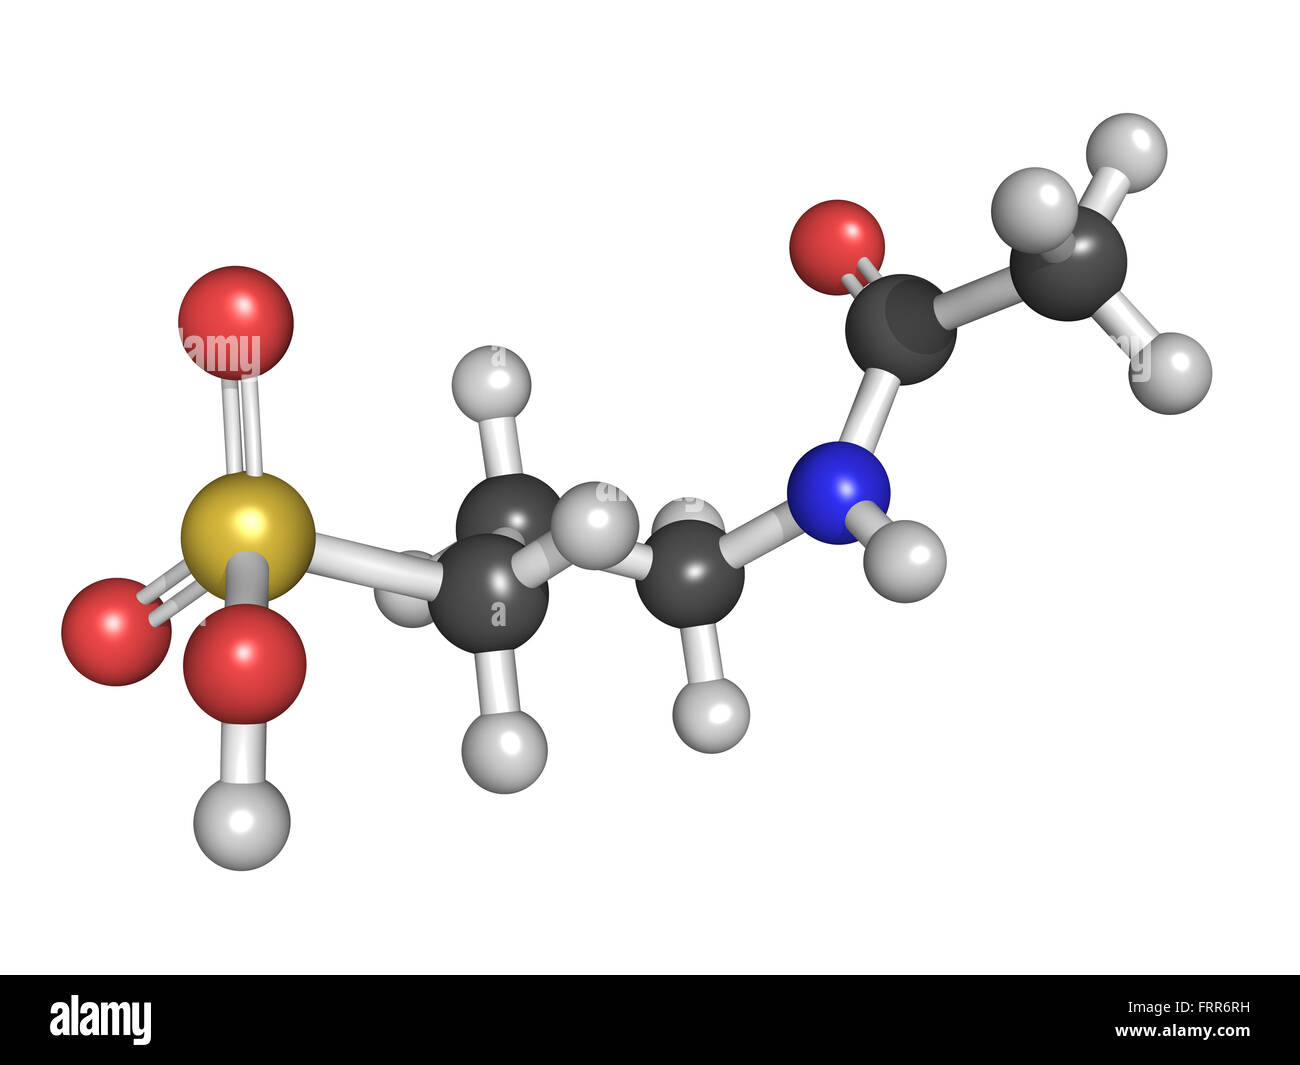 El acamprosato tratamiento del alcoholismo, la estructura química de drogas. Los átomos son representados como esferas con codificación de color convencional Foto de stock